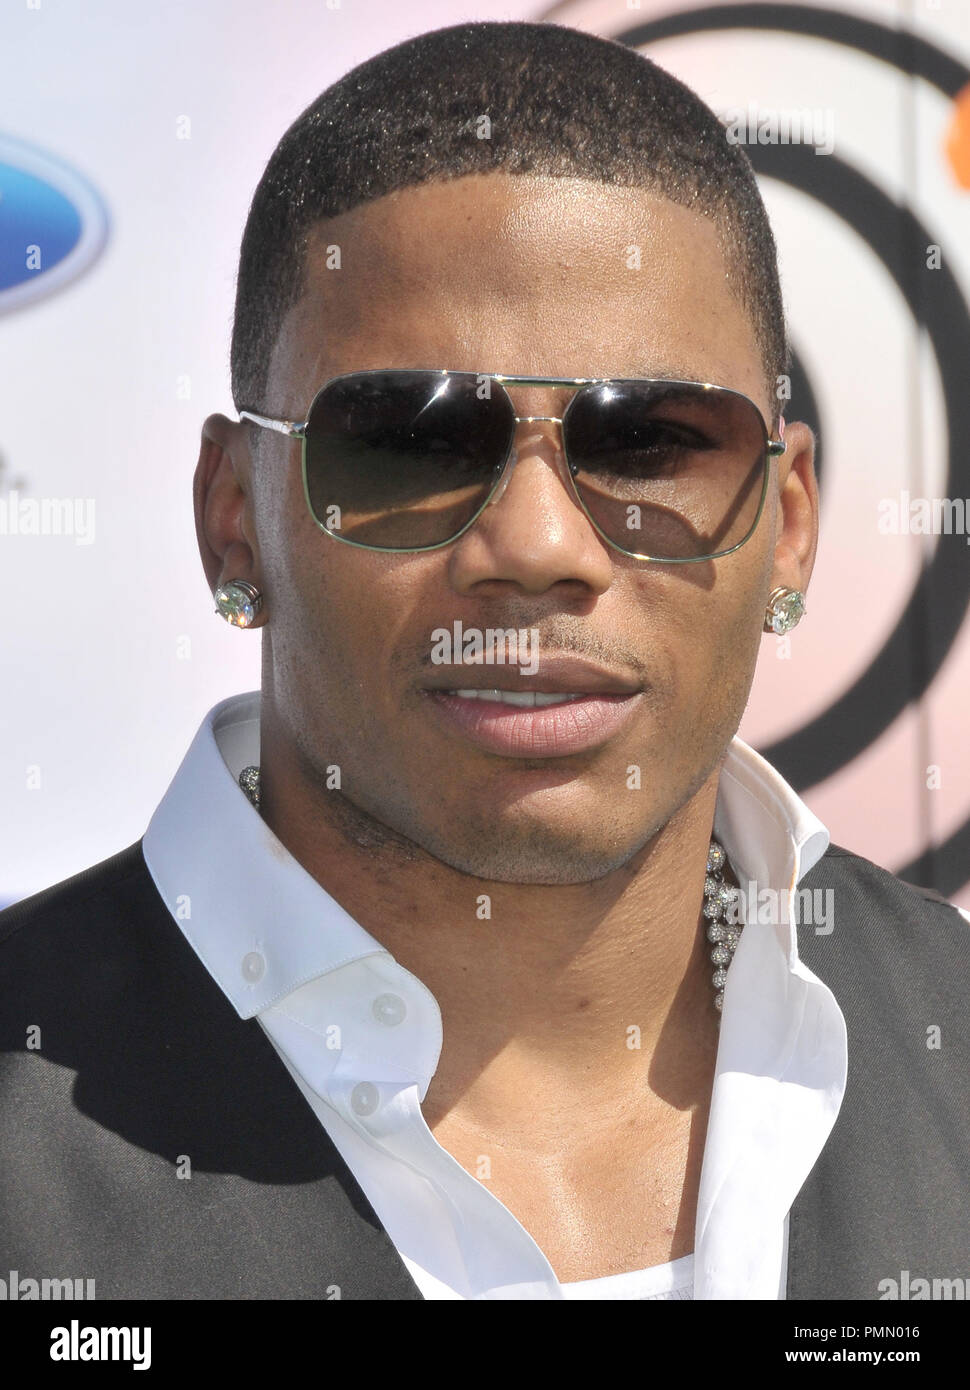 Nelly bei den BET Awards '11 - Ankunft im Shrine Auditorium in Los Angeles, CA. Die Veranstaltung fand am Sonntag, 26. Juni 2011 statt. Foto von PRPP Pacific Rim Foto Presse/PictureLux Stockfoto